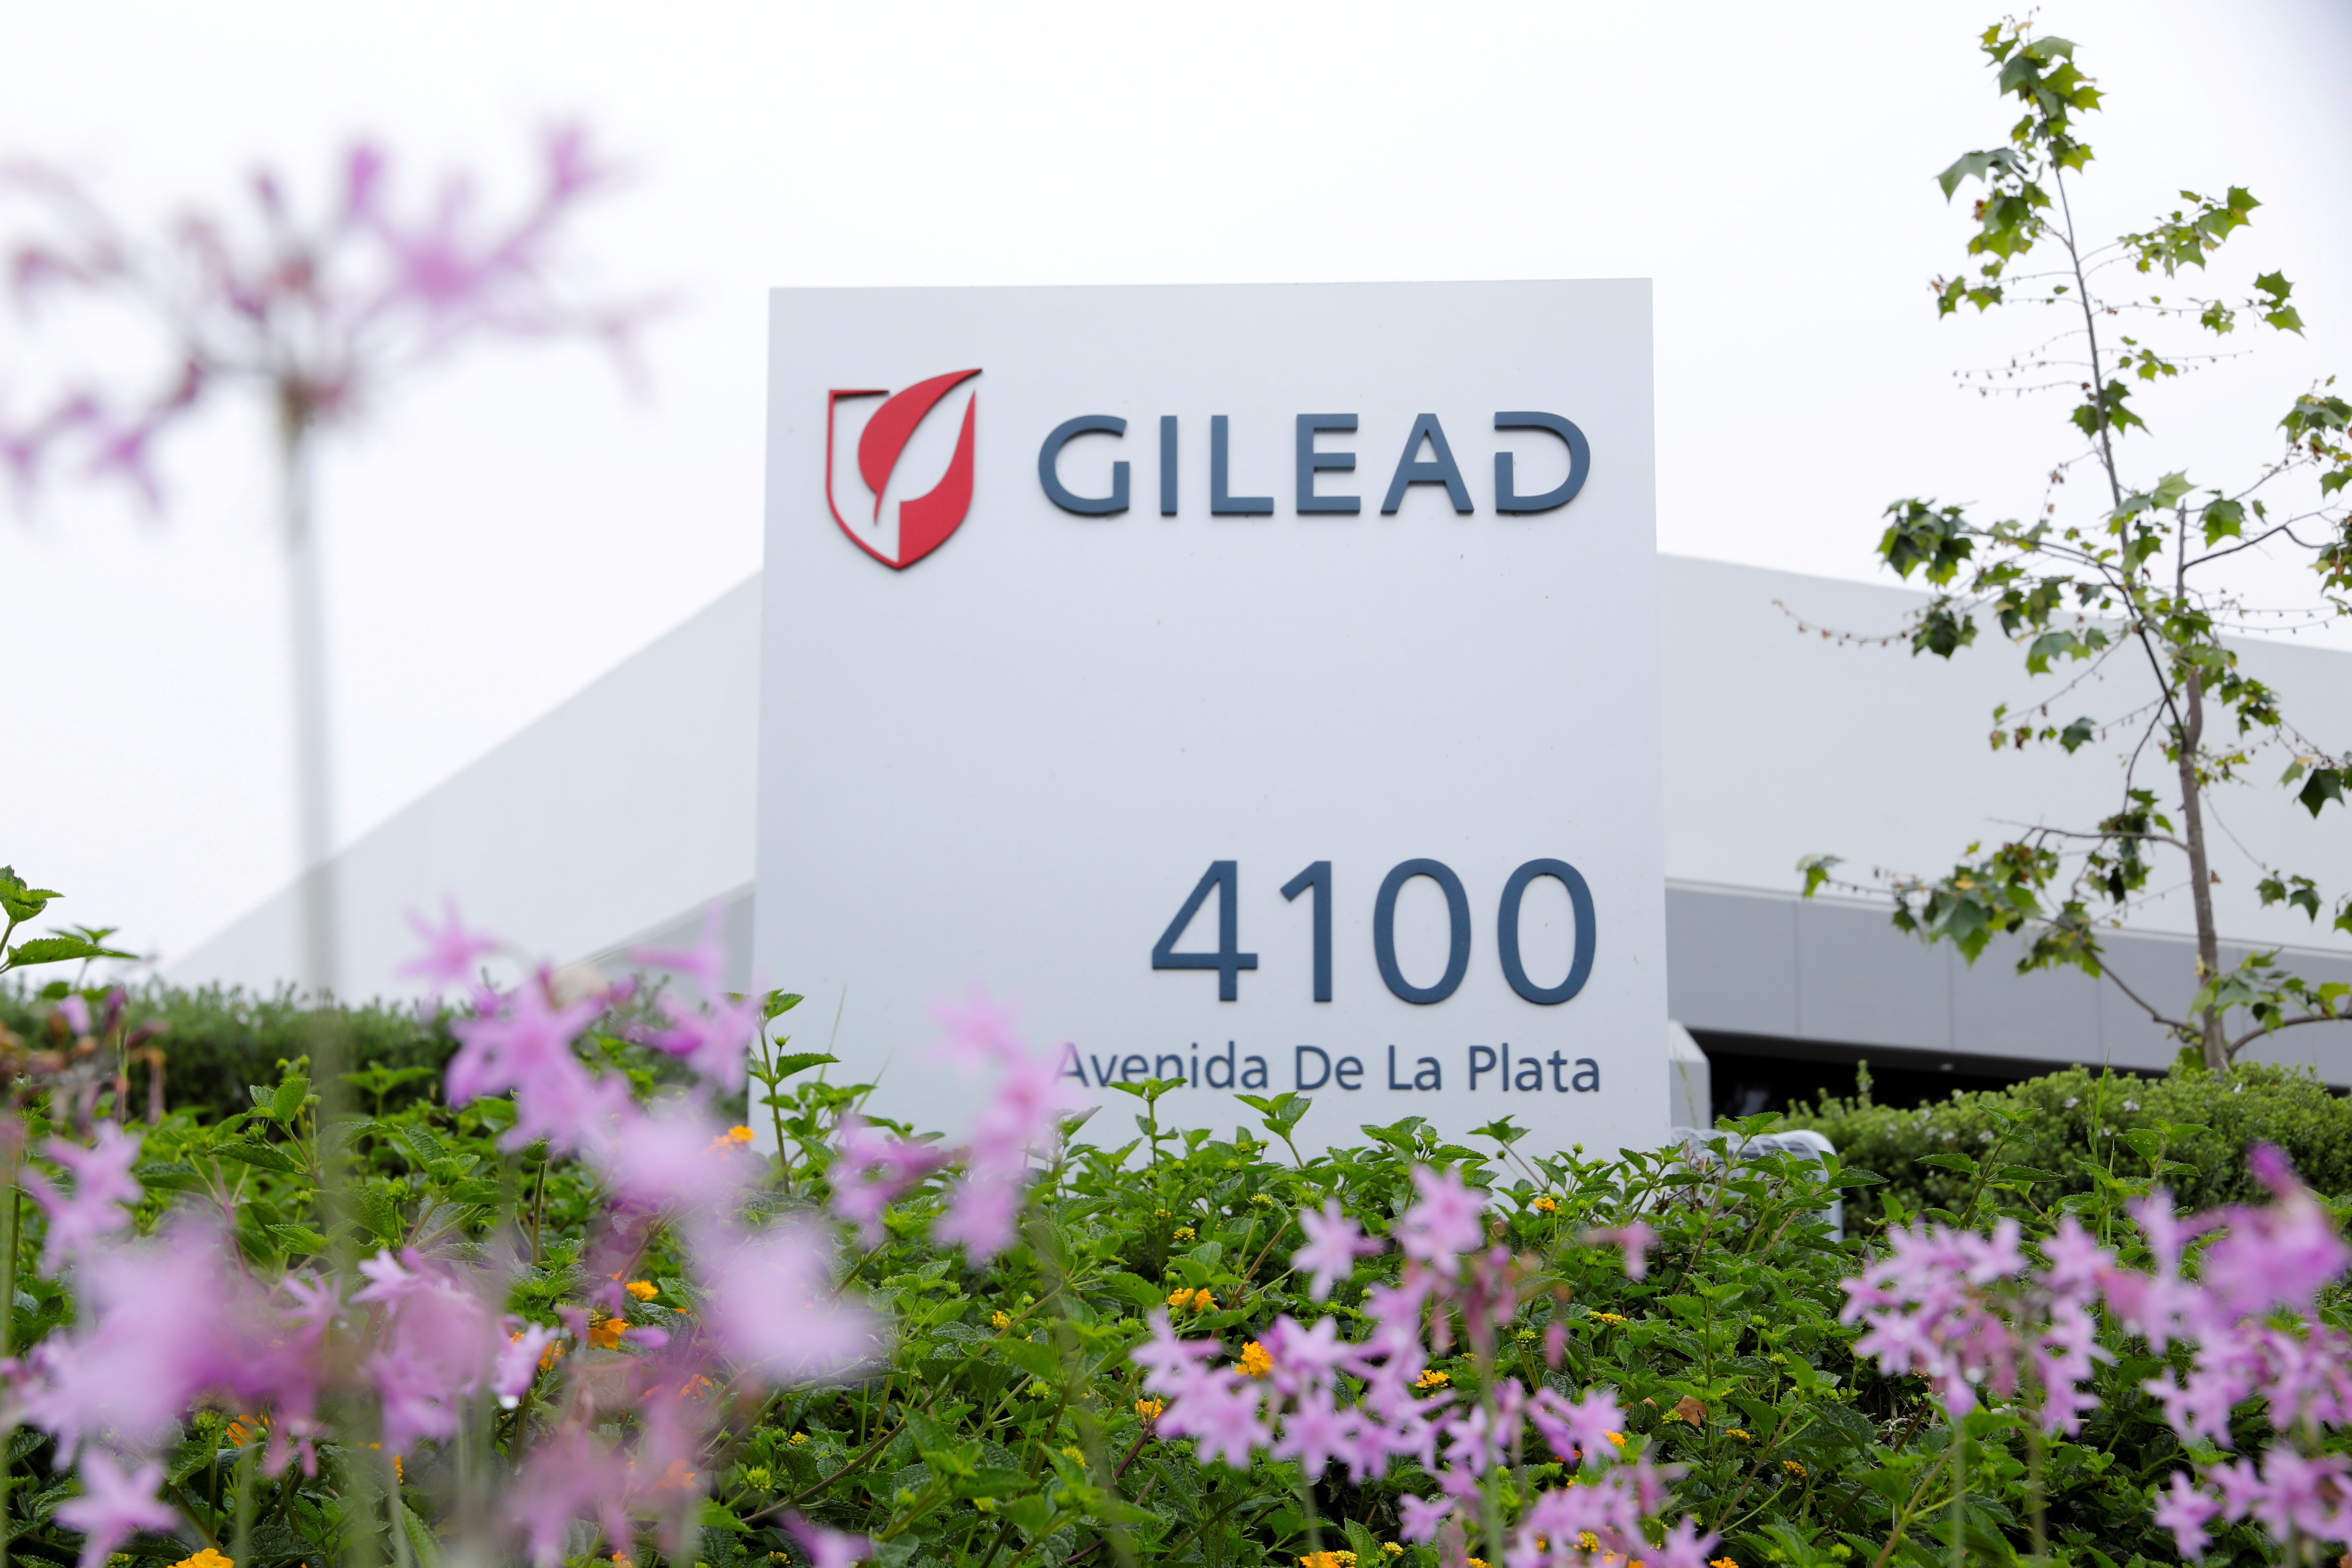 La compañía Gilead está trabajando para distribuir su droga por fuera de los Estados Unidos para casos de COVID-19 REUTERS/Mike Blake/File Photo